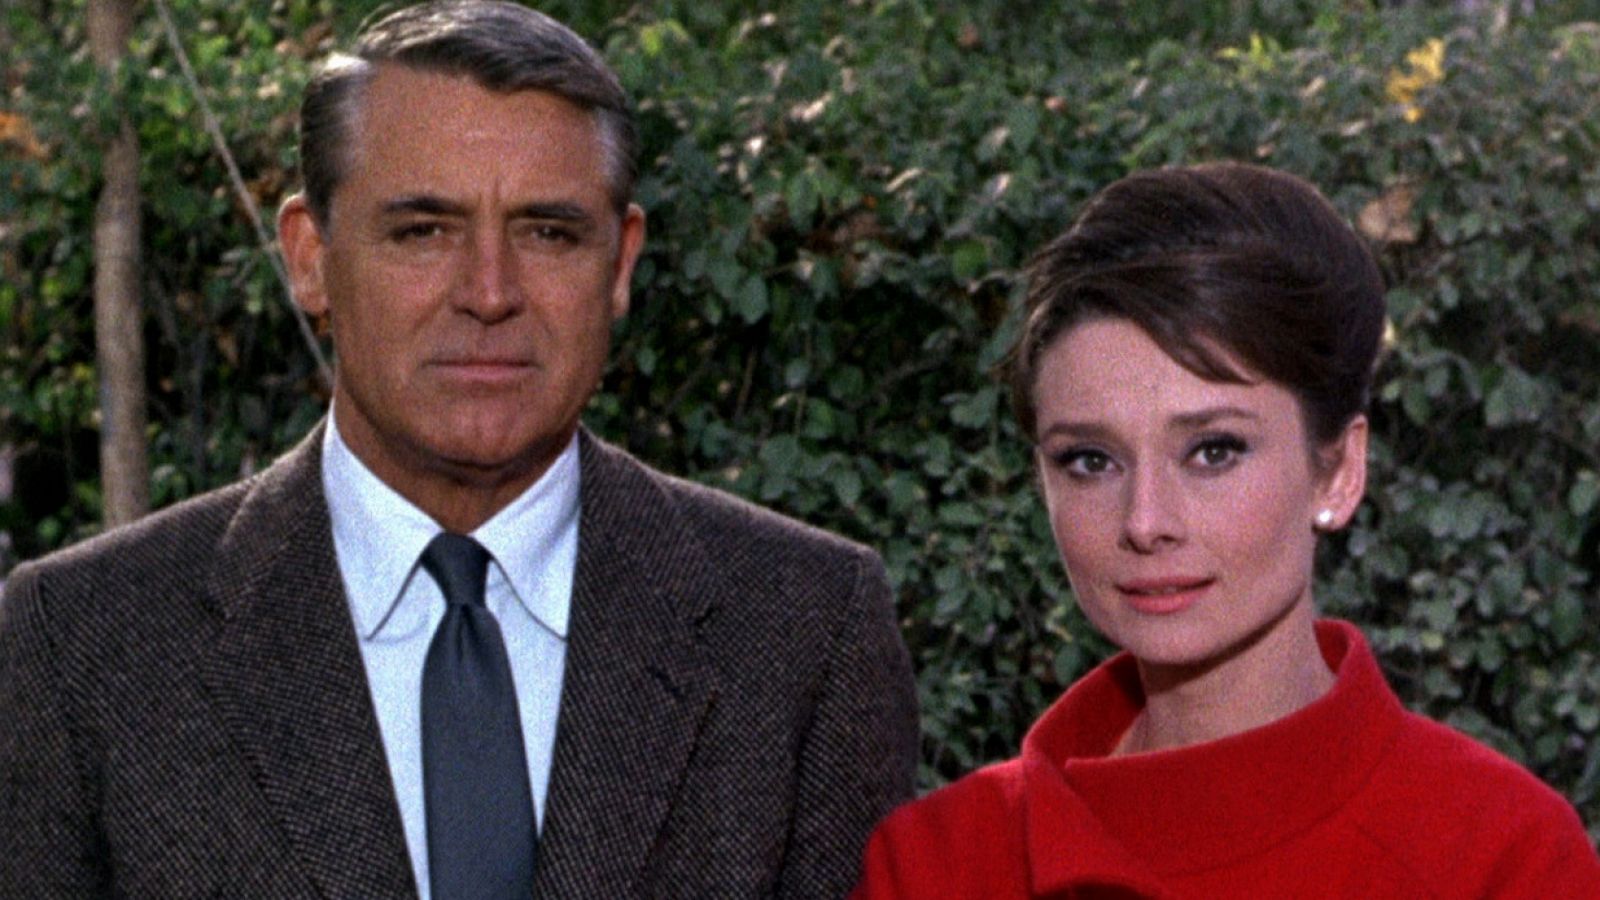 Cary Grant y Audrey Hepburn en 'Charada' (Stanley Donen, 1963)